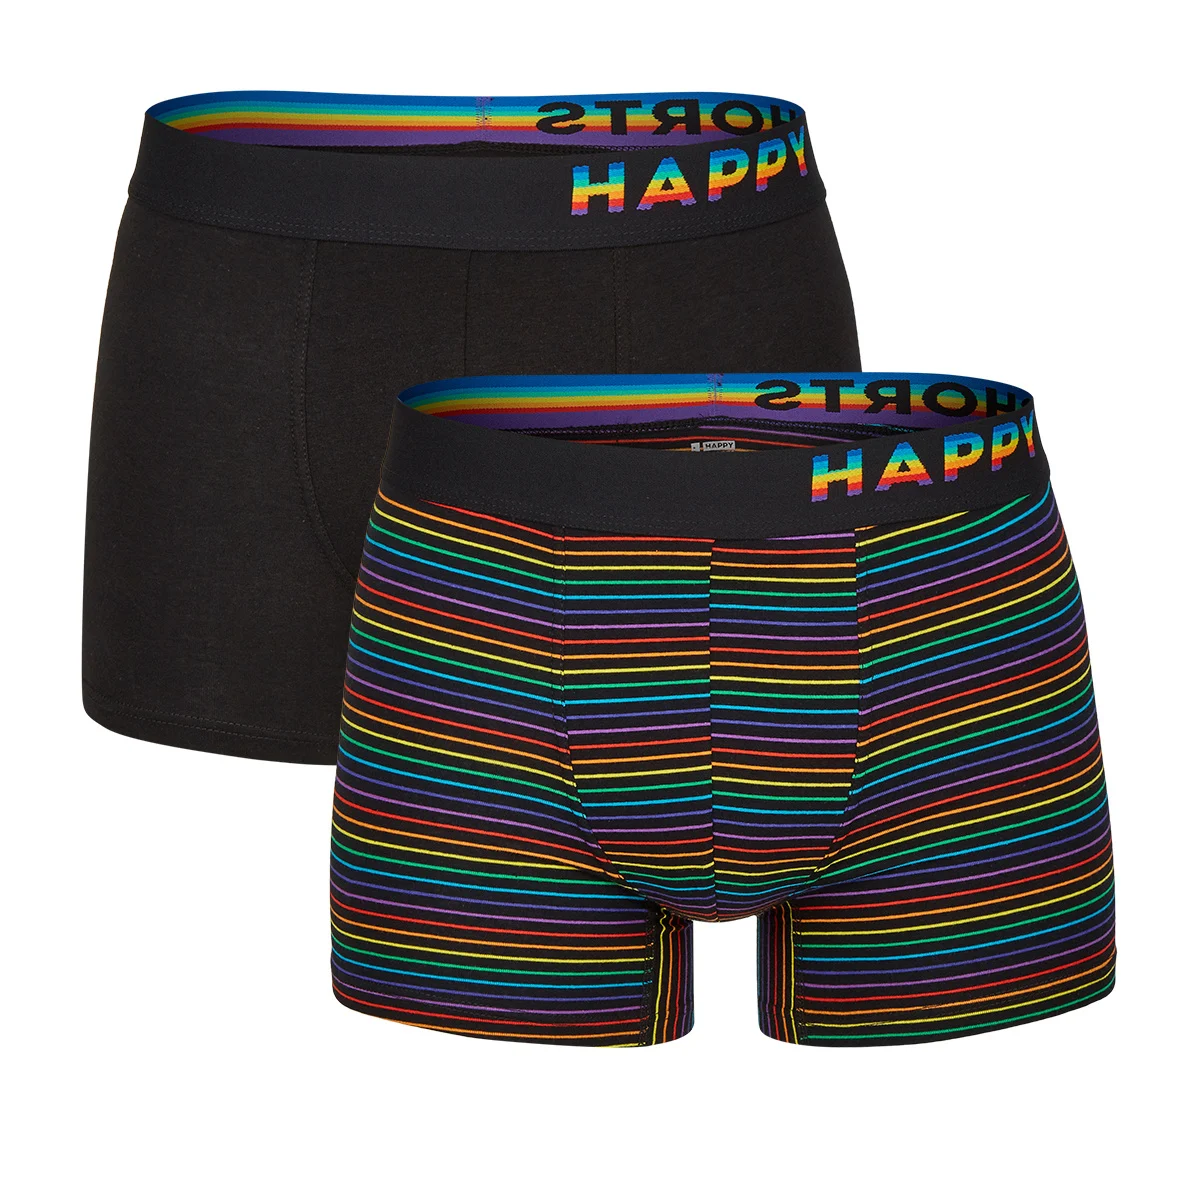 Afbeelding van Happy Shorts 2-pack boxershorts heren pride regenboog gestreept